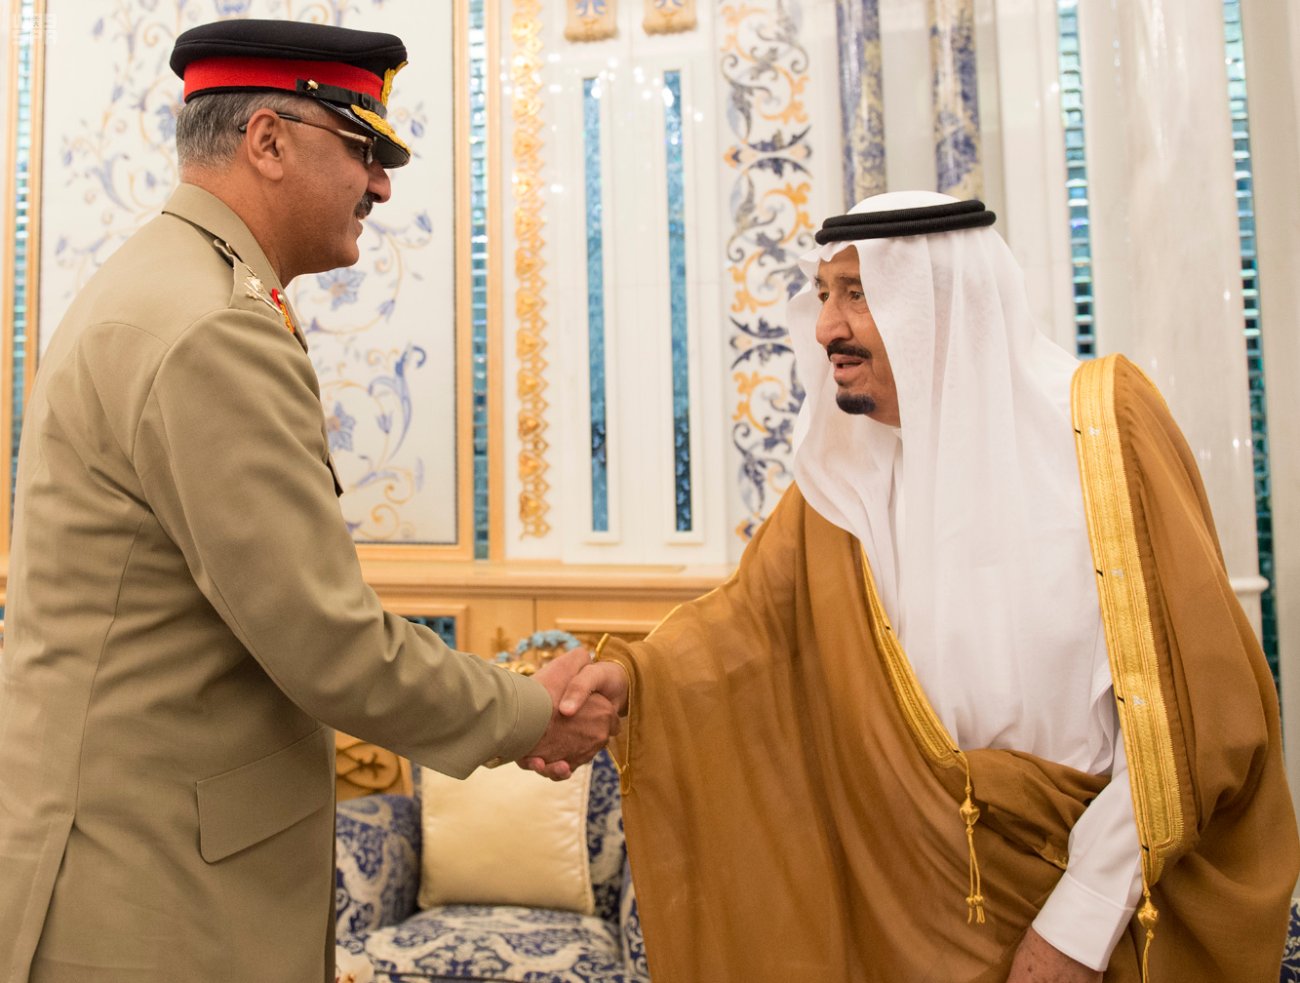 الملك يبحث مع رئيس هيئة الأركان المشتركة الباكستاني العلاقات الأخوية ومحاربة الإرهاب